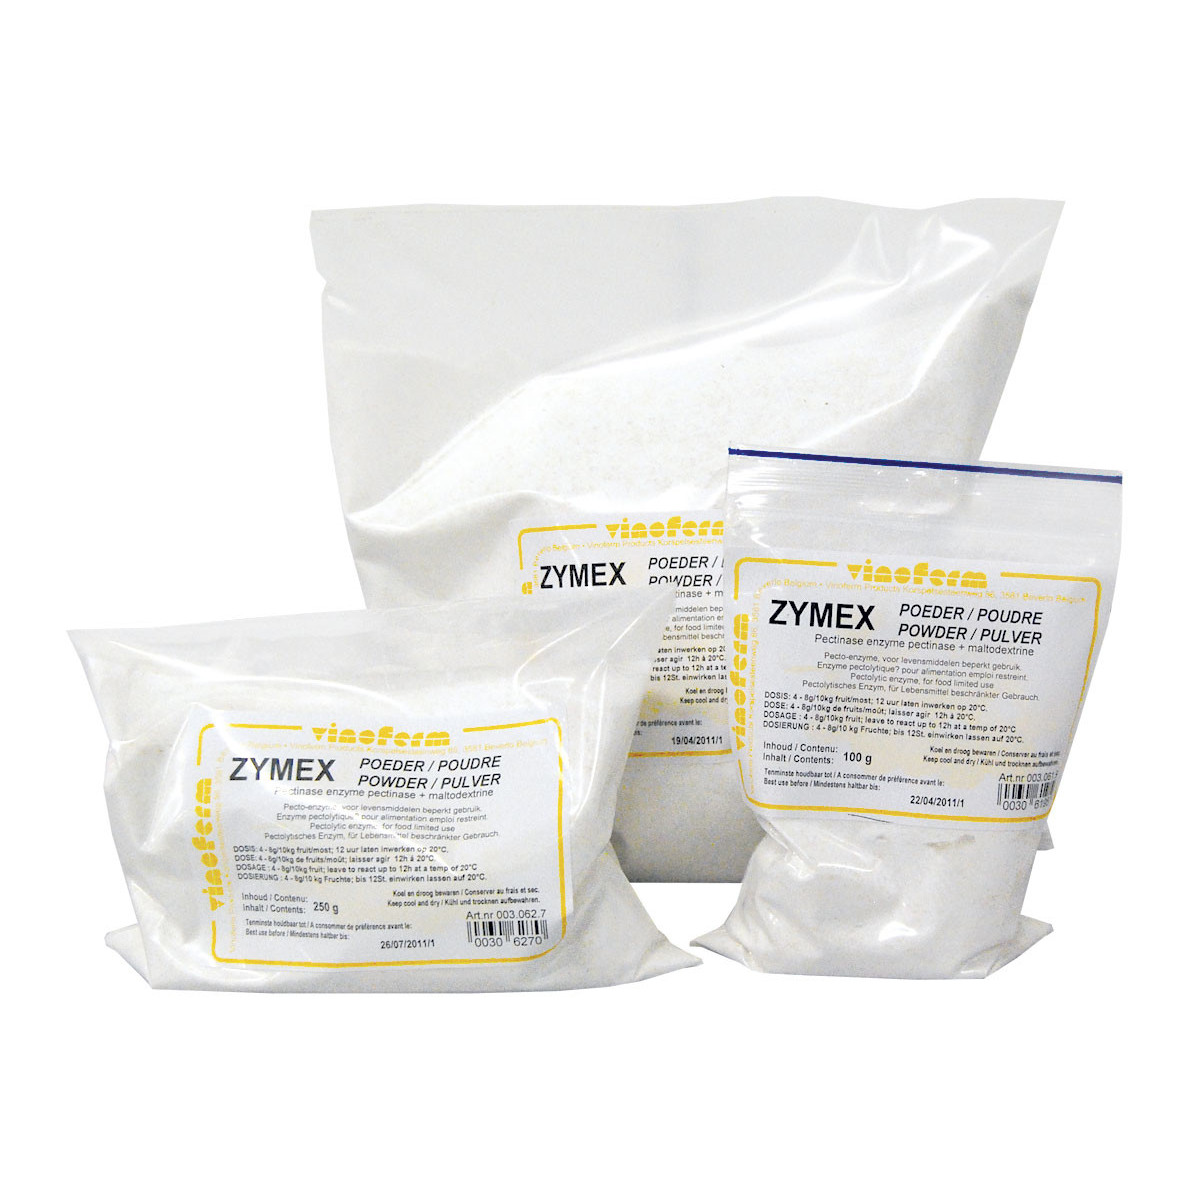 pecto-enzyme VINOFERM zymex 1 kg